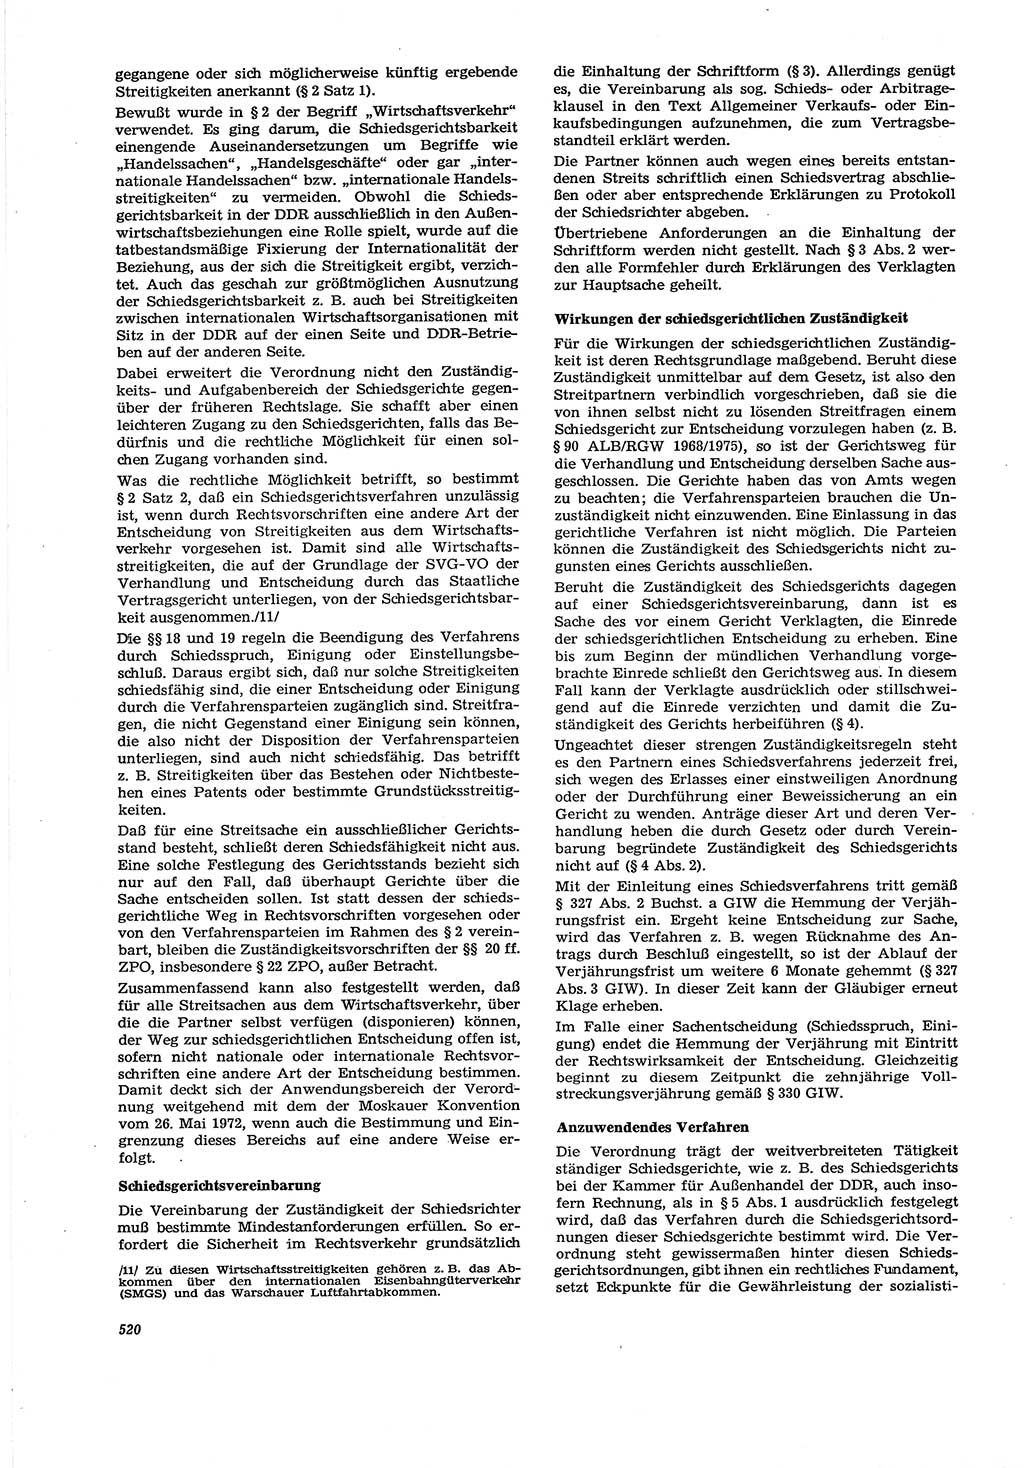 Neue Justiz (NJ), Zeitschrift für Recht und Rechtswissenschaft [Deutsche Demokratische Republik (DDR)], 30. Jahrgang 1976, Seite 520 (NJ DDR 1976, S. 520)